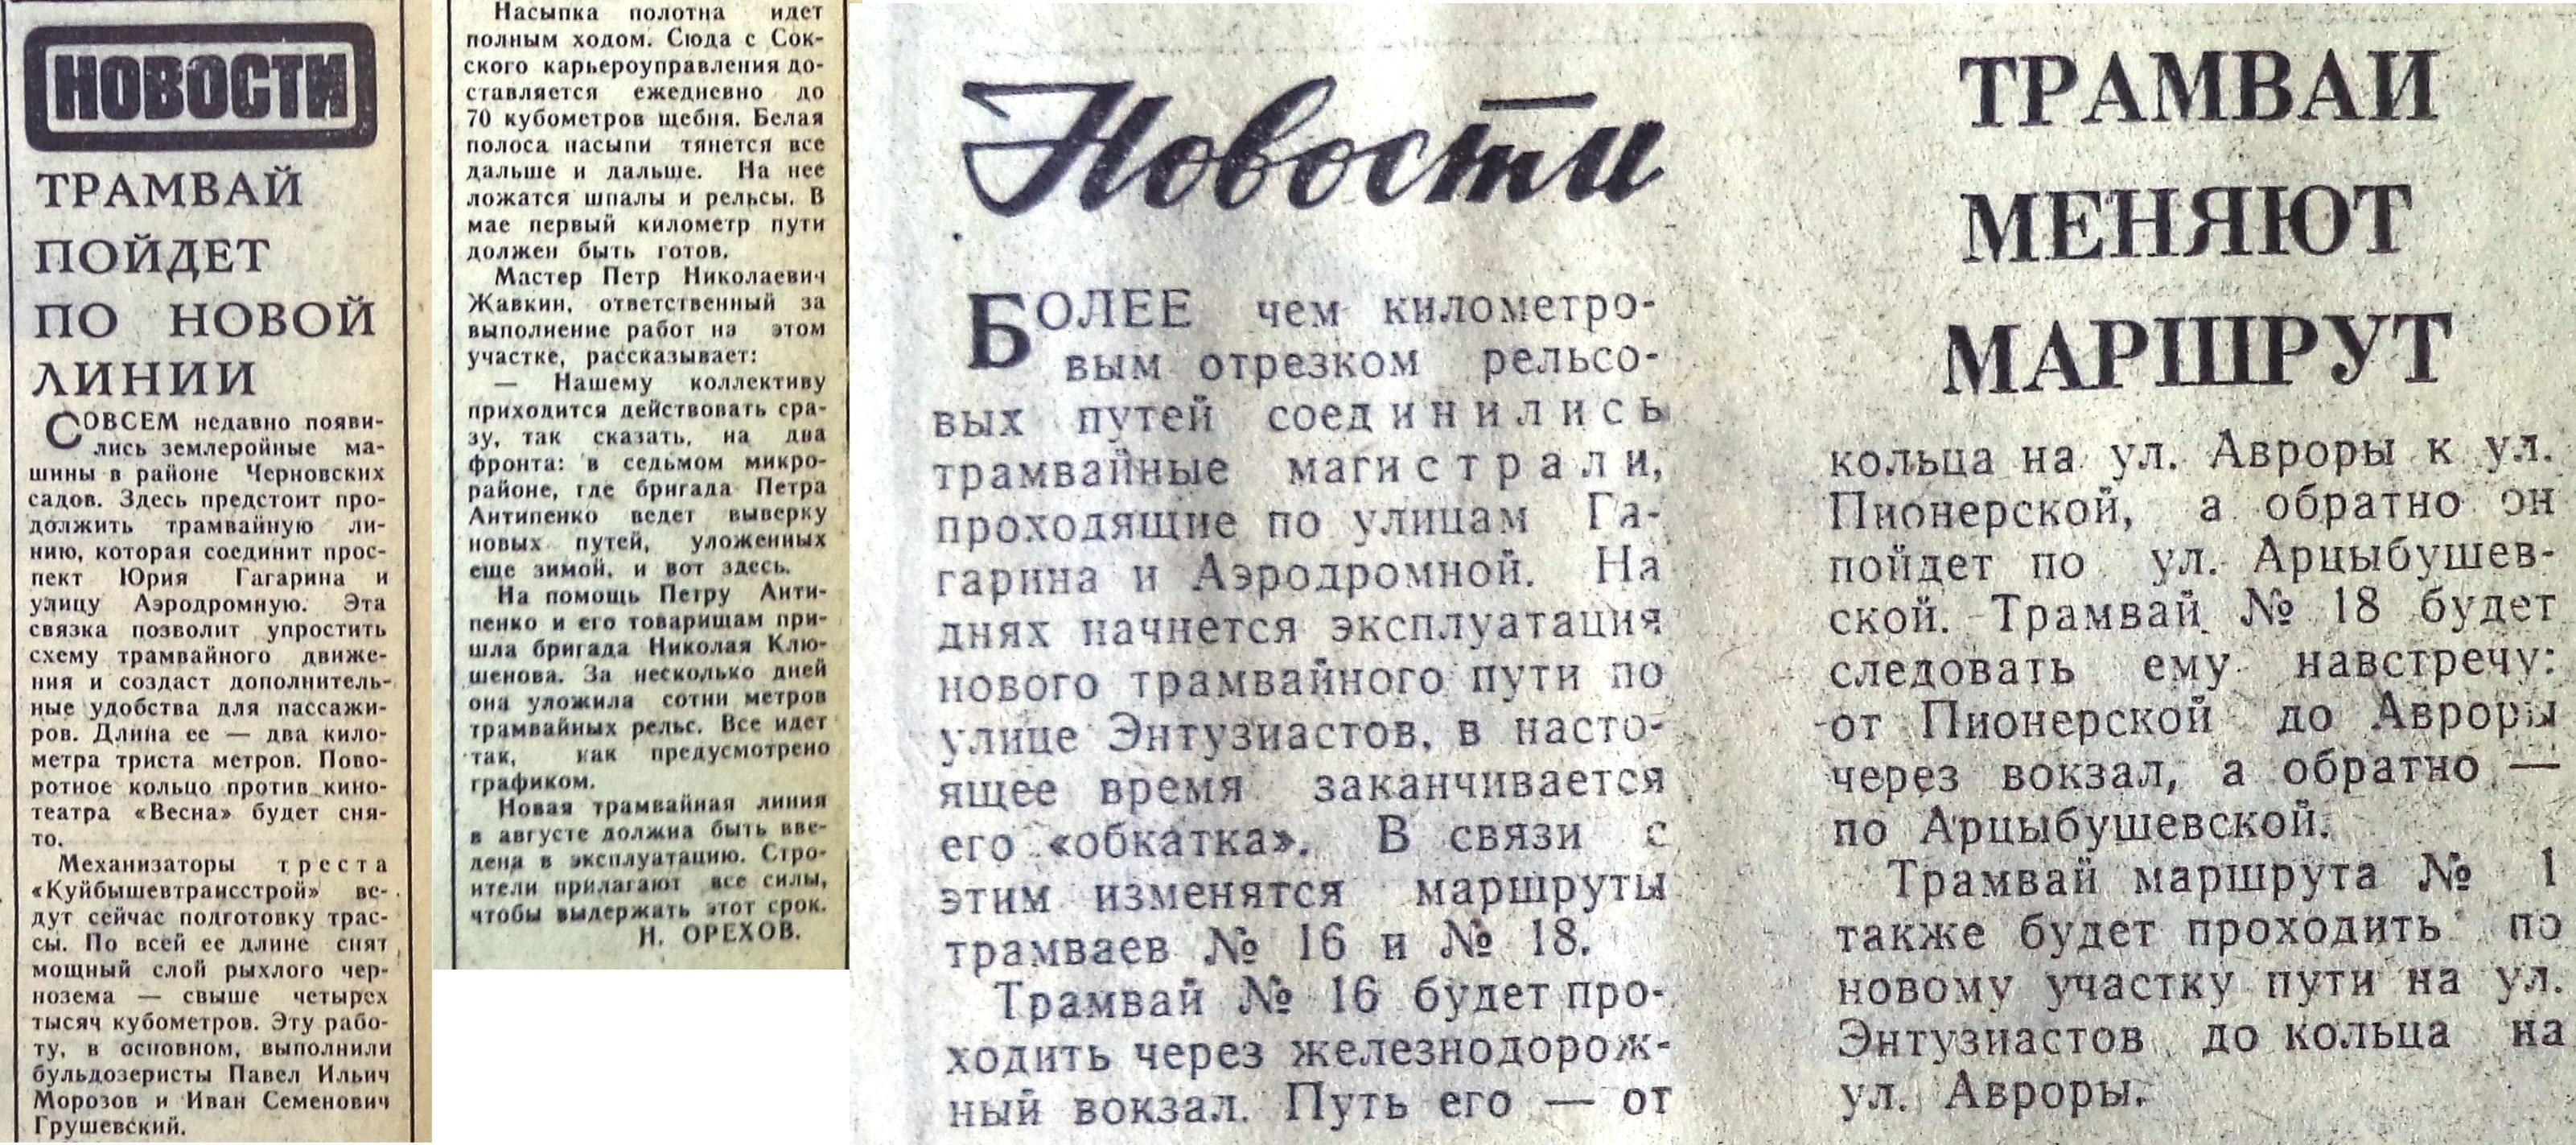 Энтузиастов-ФОТО-36-ВЗя-1969-05-17-про трам. линию на Энт. - копия-min